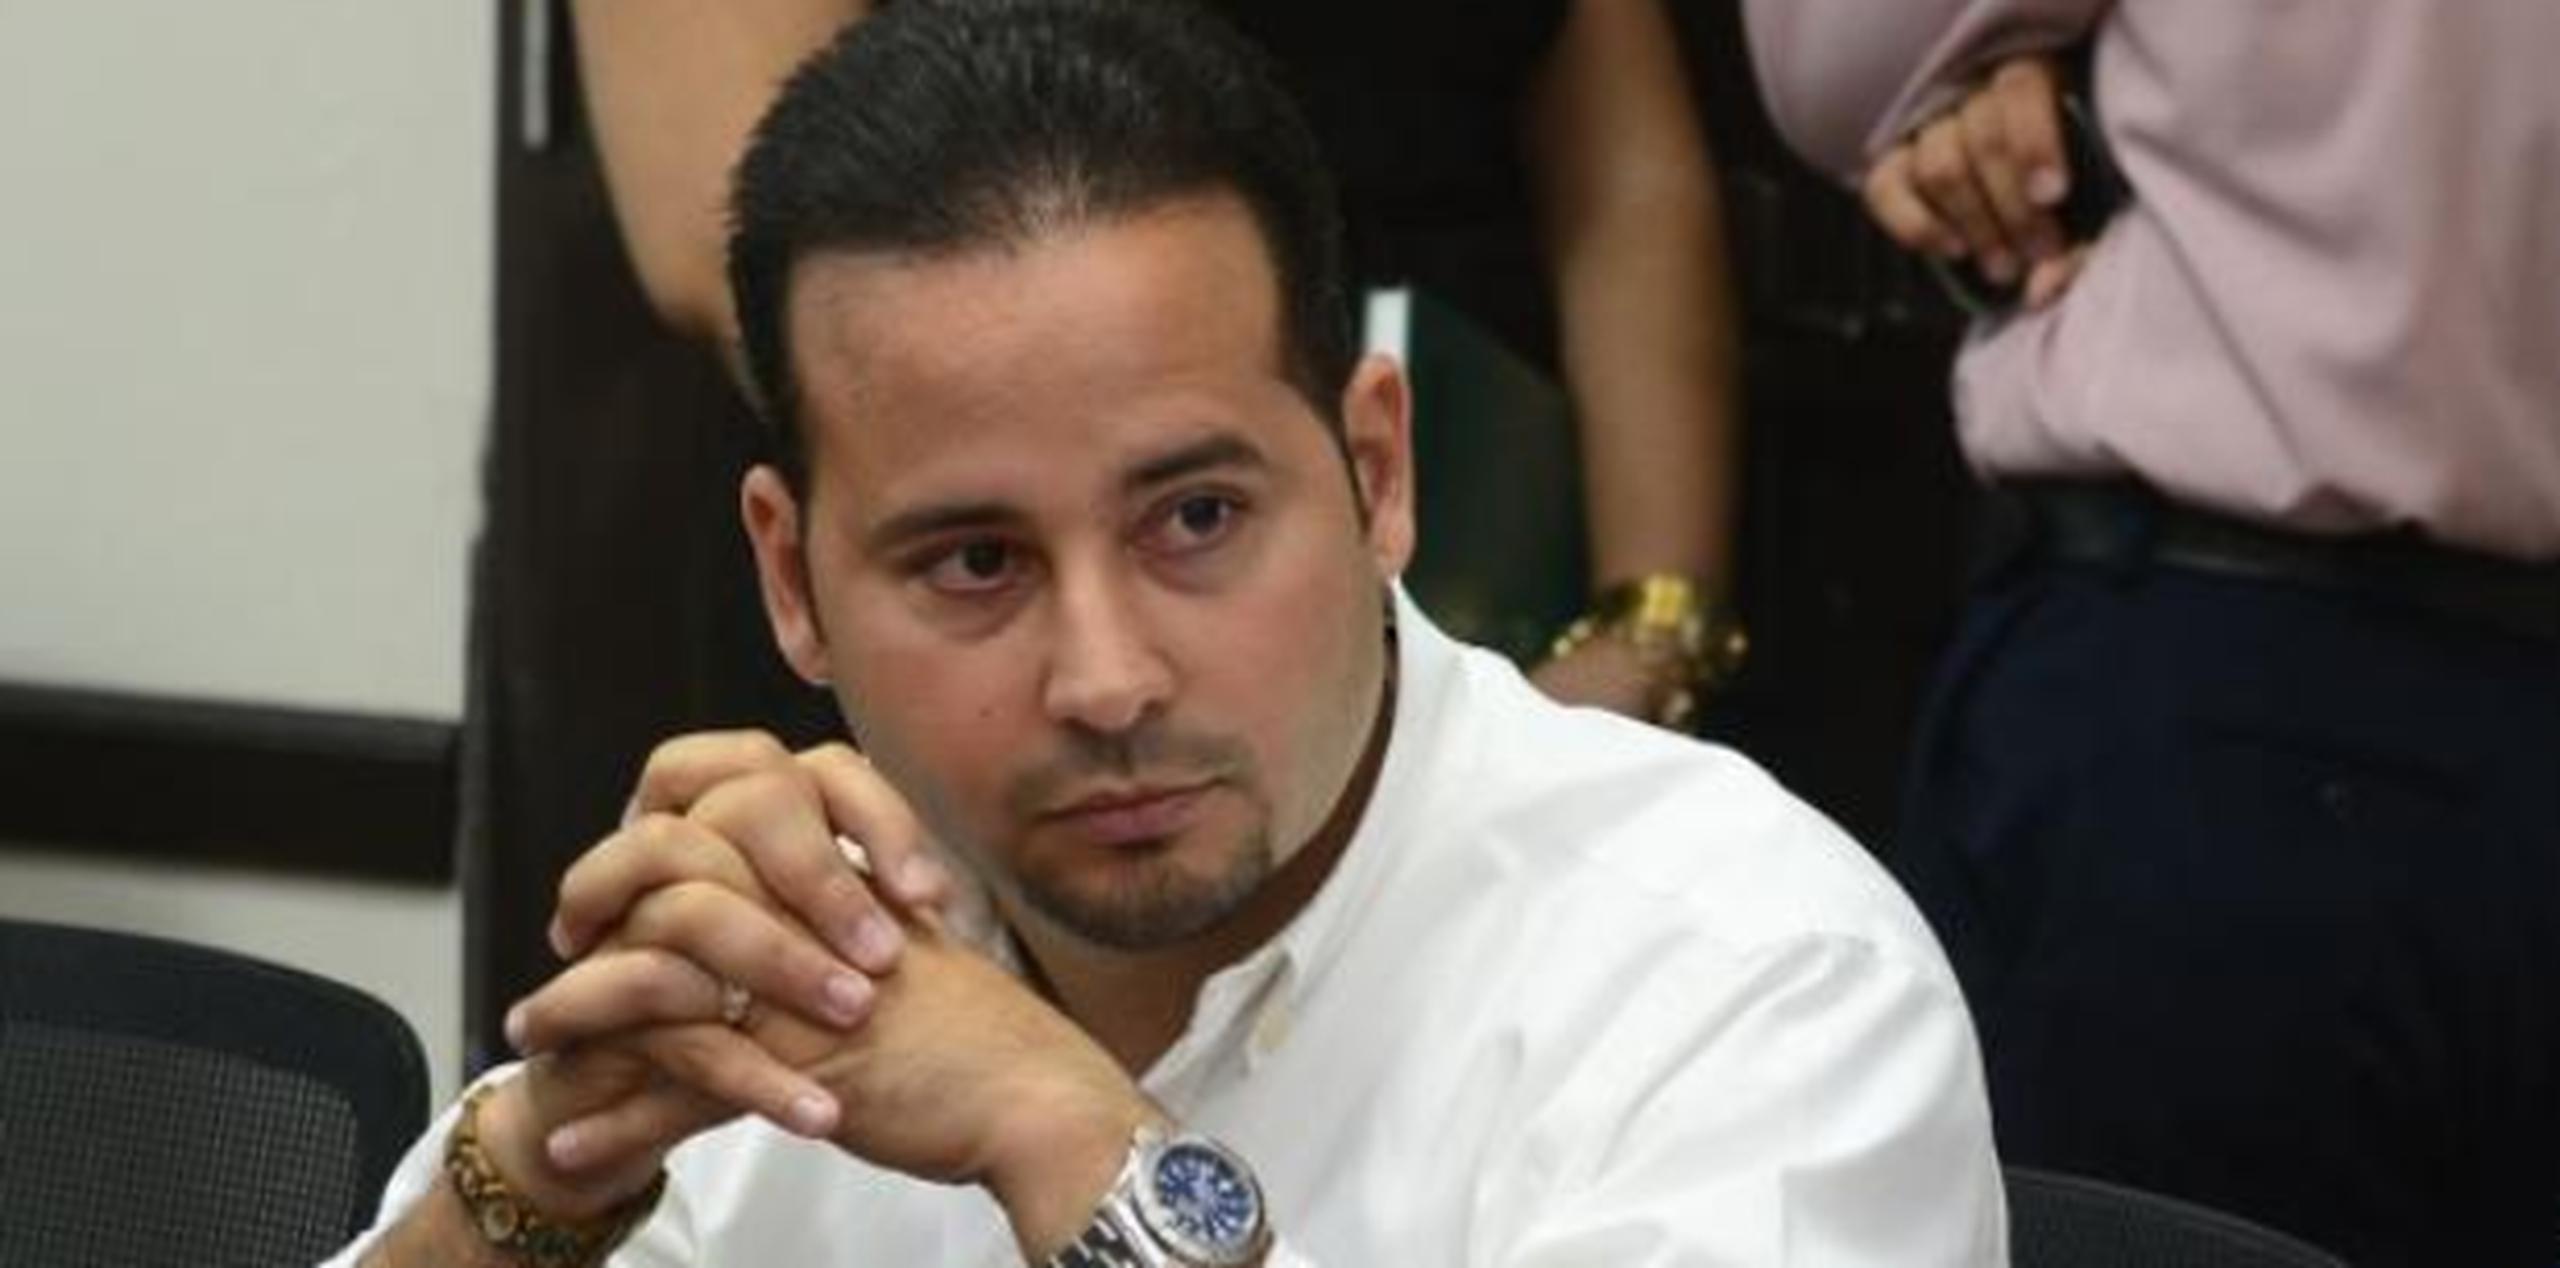 Hernández presuntamente recibió donativos para su campaña política por parte de un contratista municipal en un esquema conocido como "Pay for Play". (Archivo)